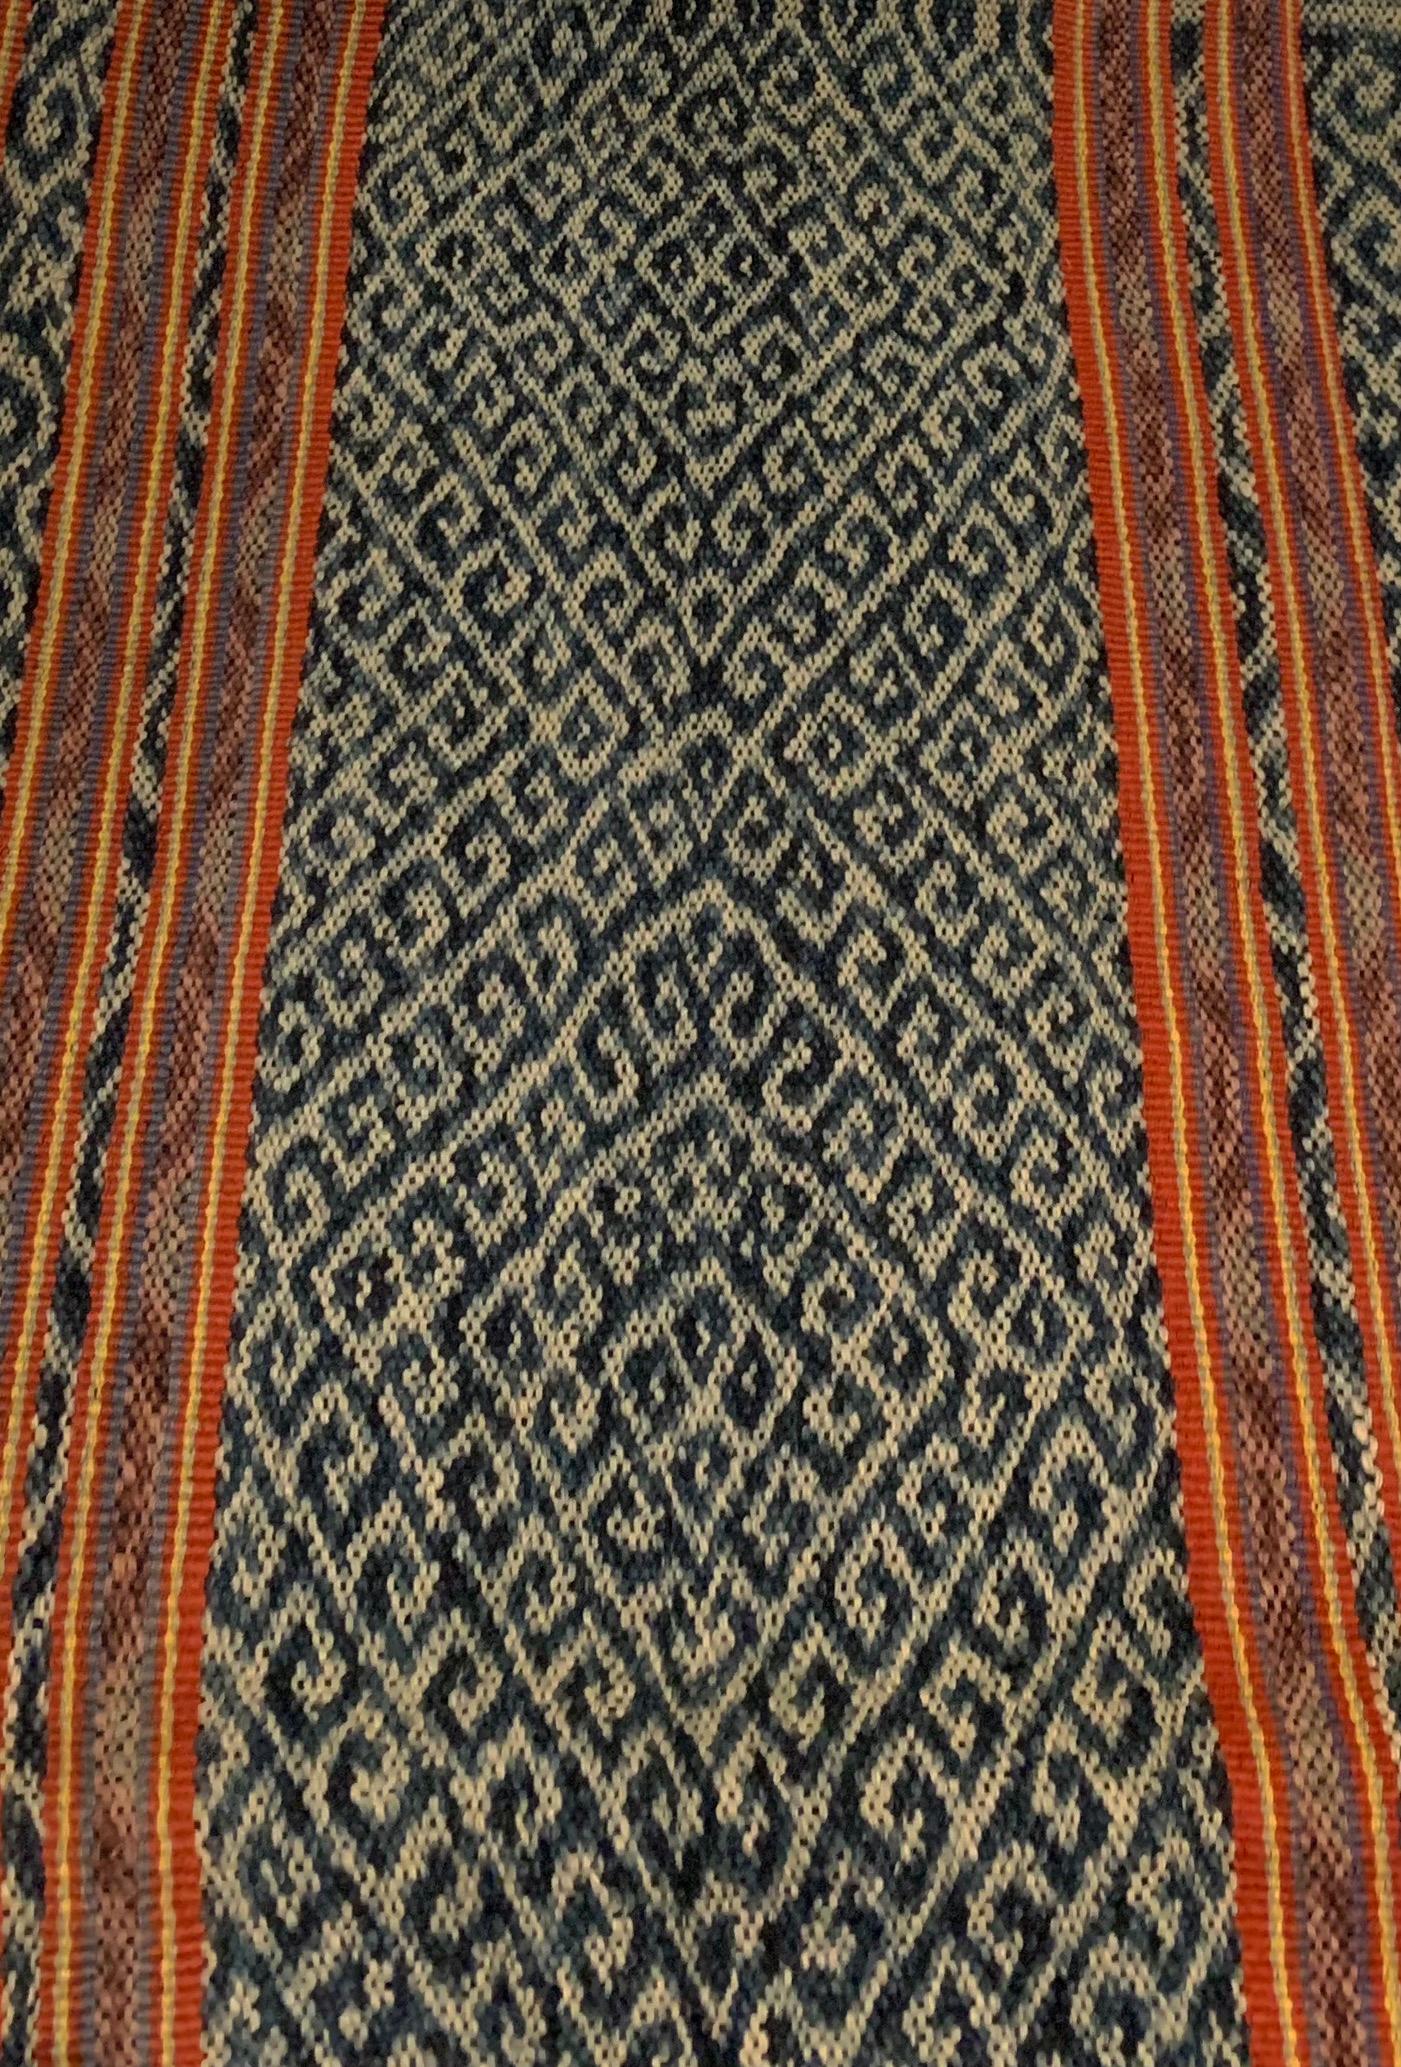 Ikat-Textil von Timor-Insel mit atemberaubendem naturfarbenem Farbstoff, Indonesien (Sonstiges) im Angebot